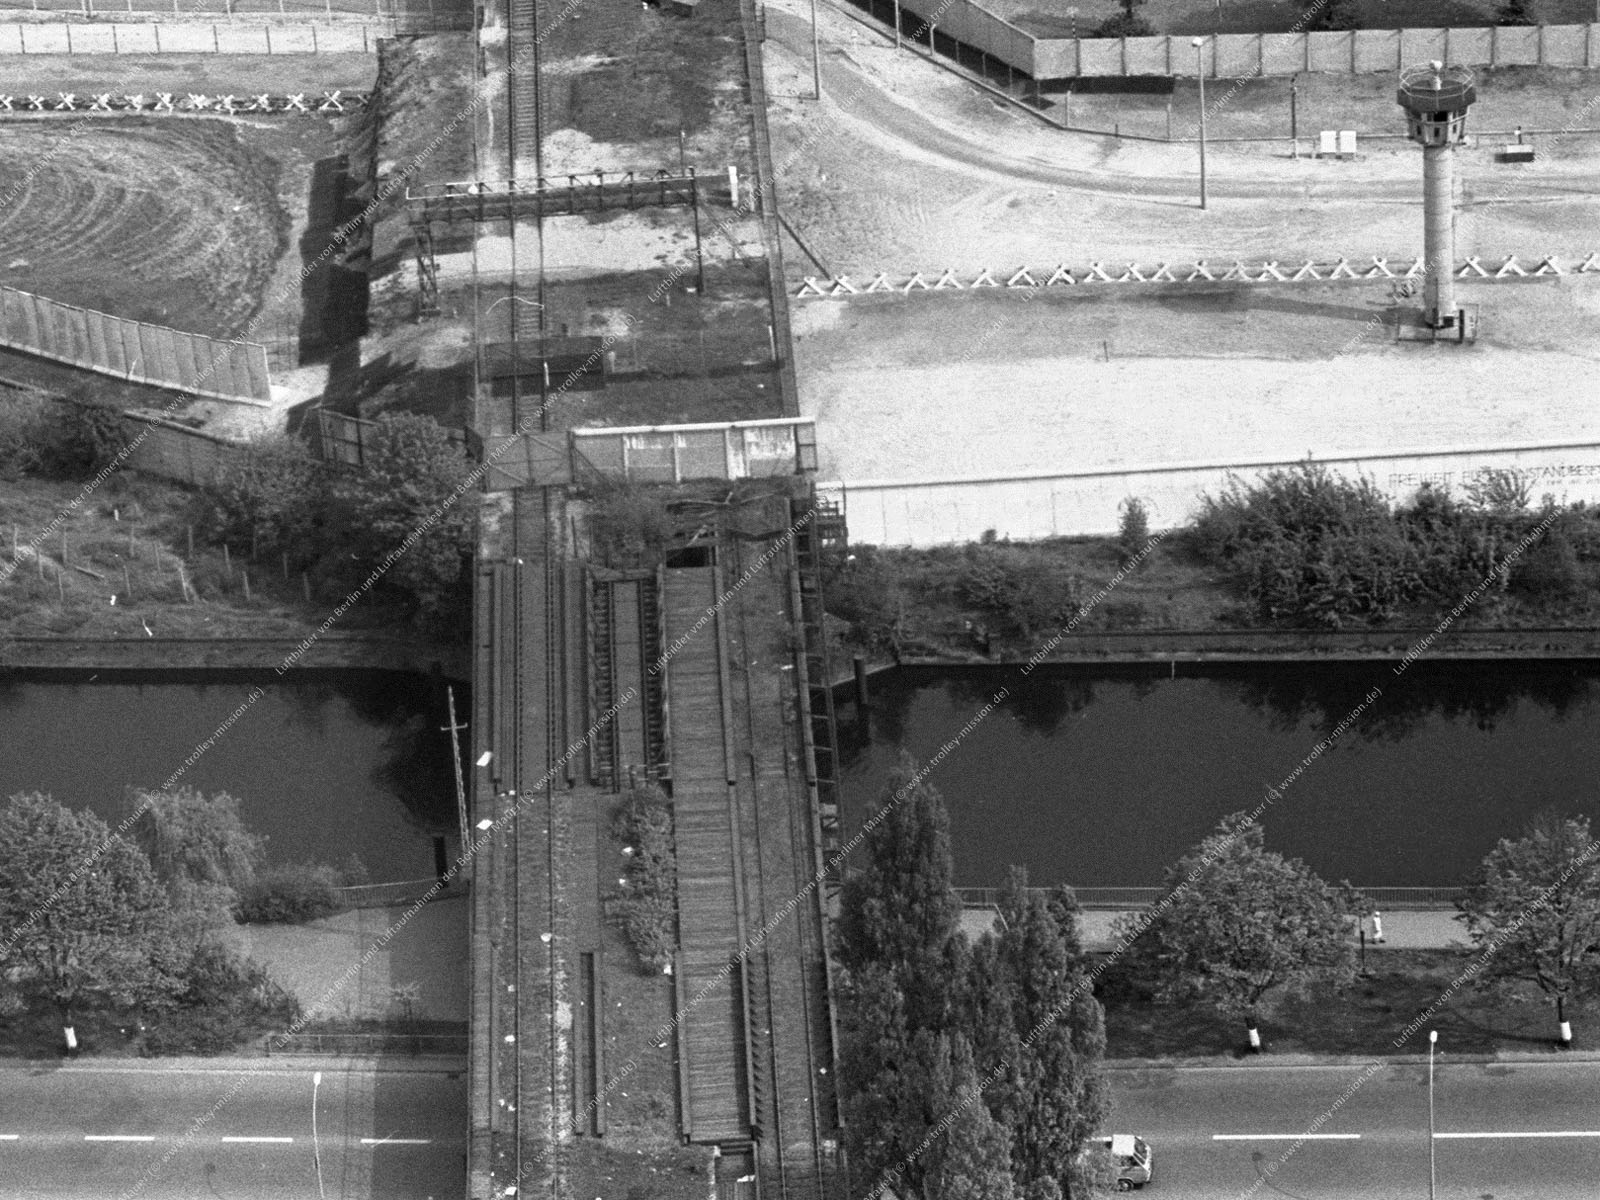 Luftbild der alten Eisenbahnbrücke (Görlitzer Brücke) über den Landwehrkanal zwischen dem Görlitzer Ufer in Berlin-Kreuzberg und dem Wiesenufer in Berlin-Treptow